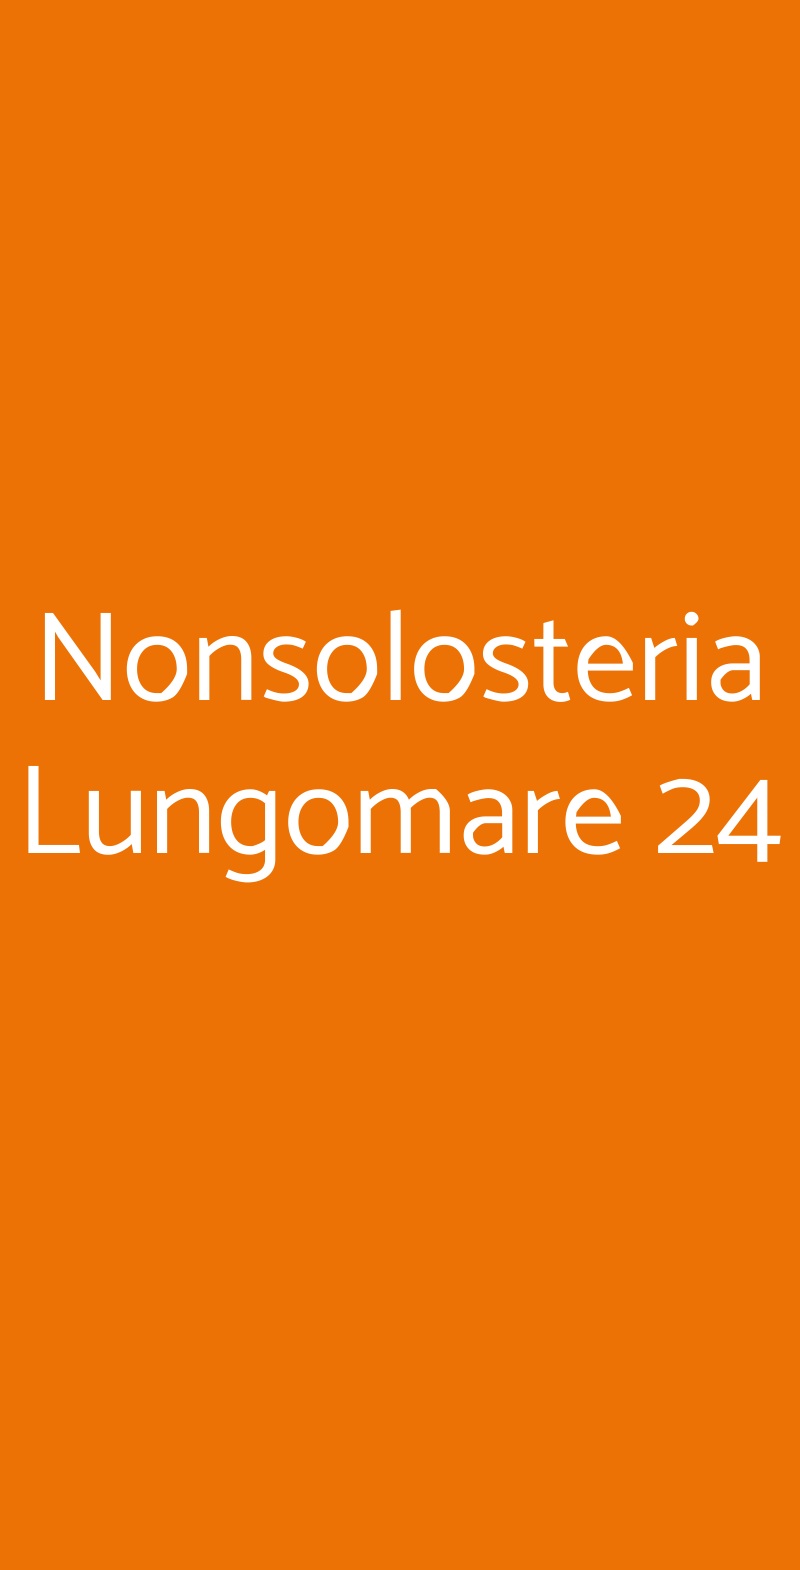 Nonsolosteria Lungomare 24 Cervia menù 1 pagina